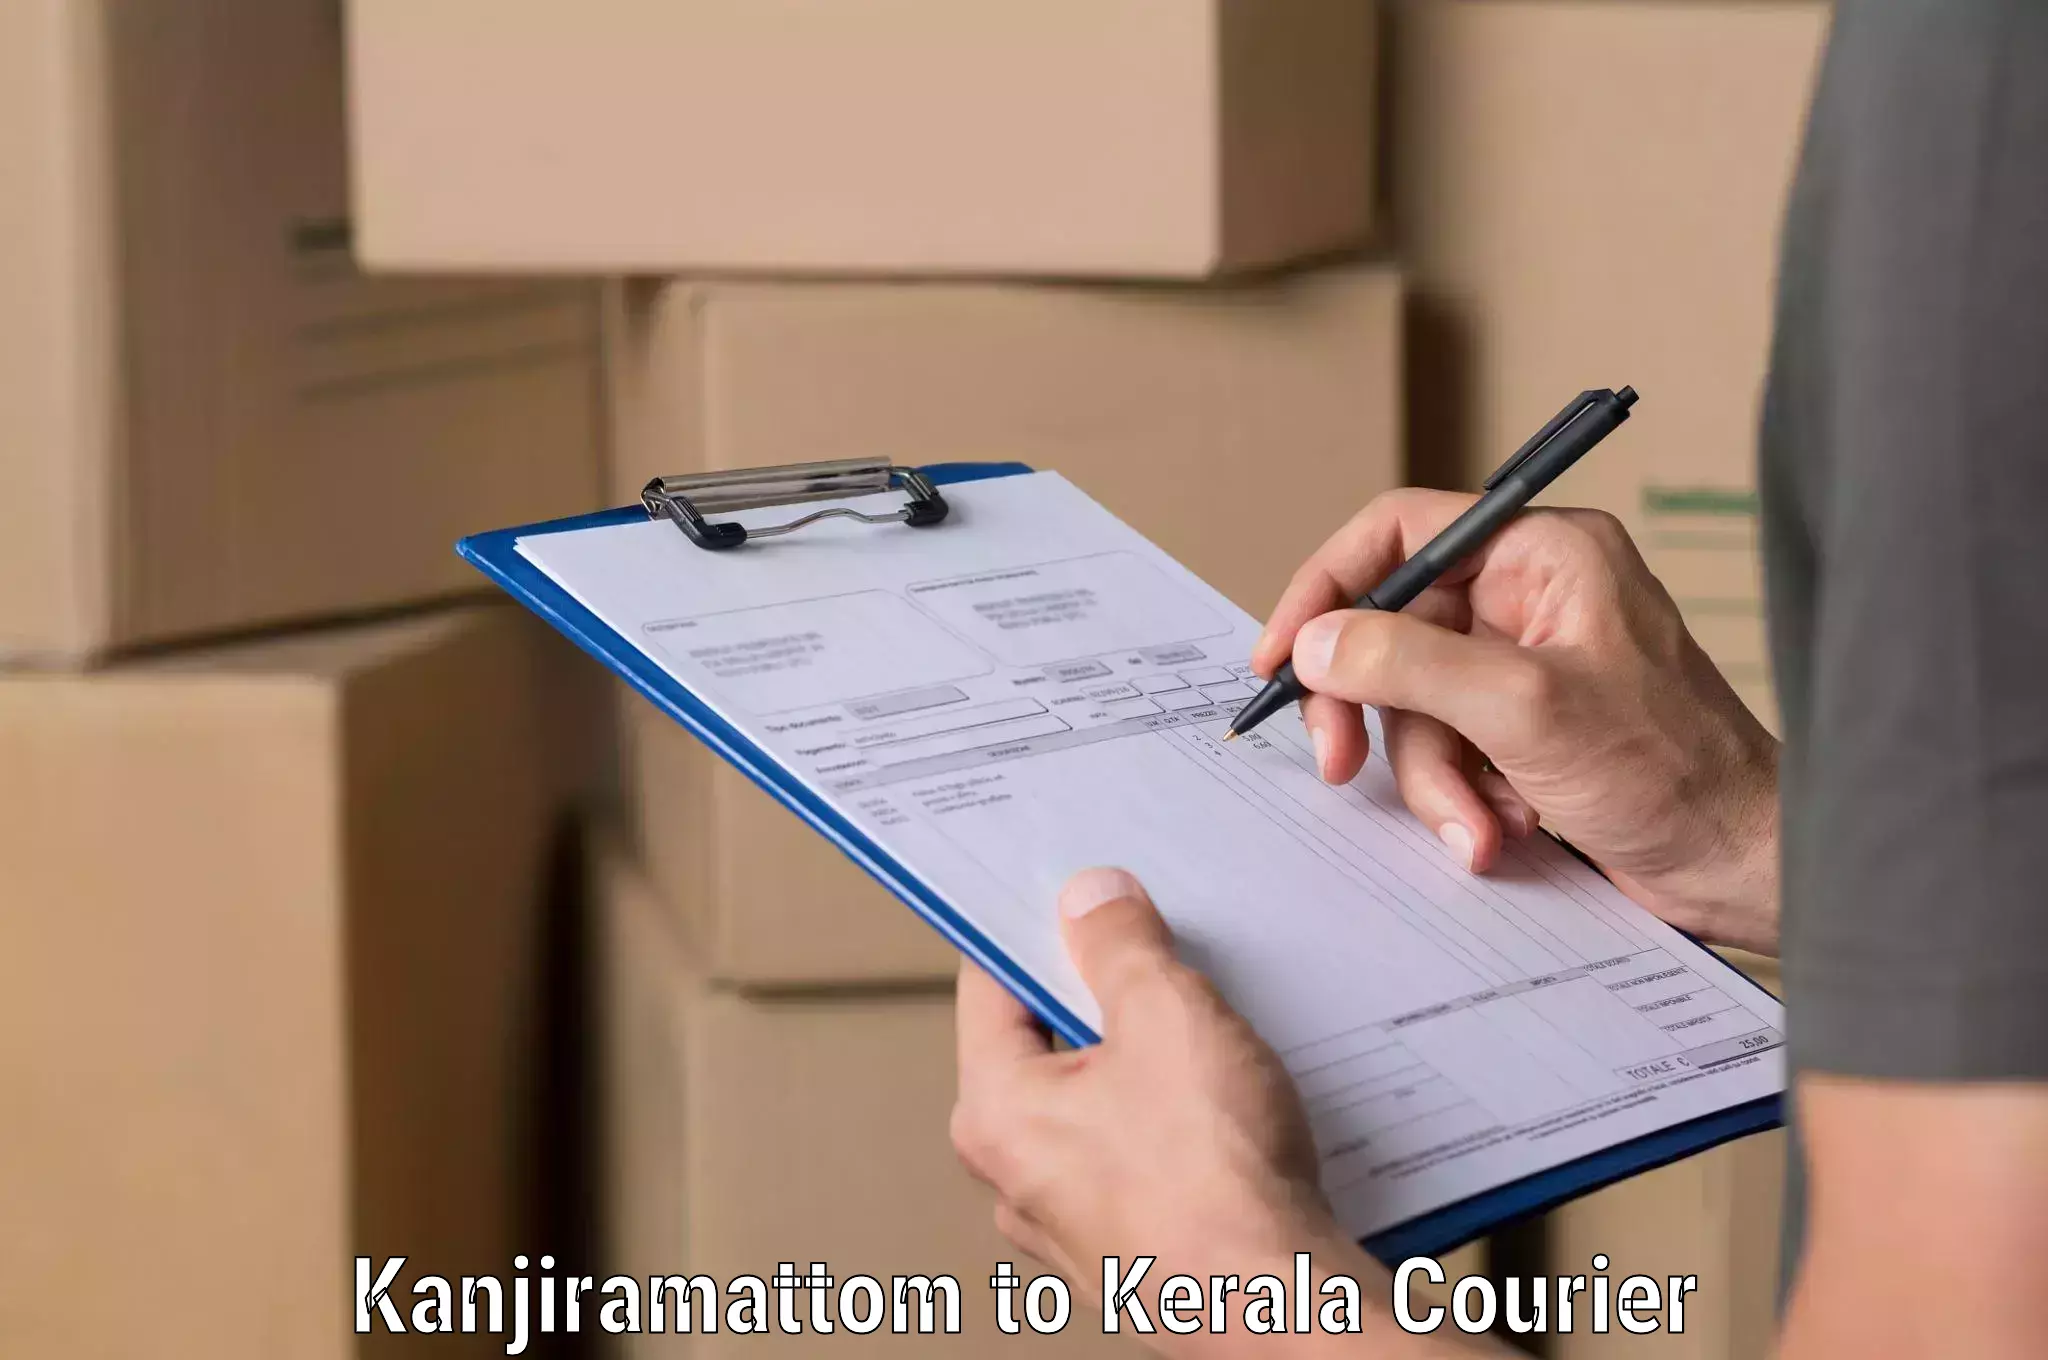 Global shipping solutions Kanjiramattom to Kuttikol